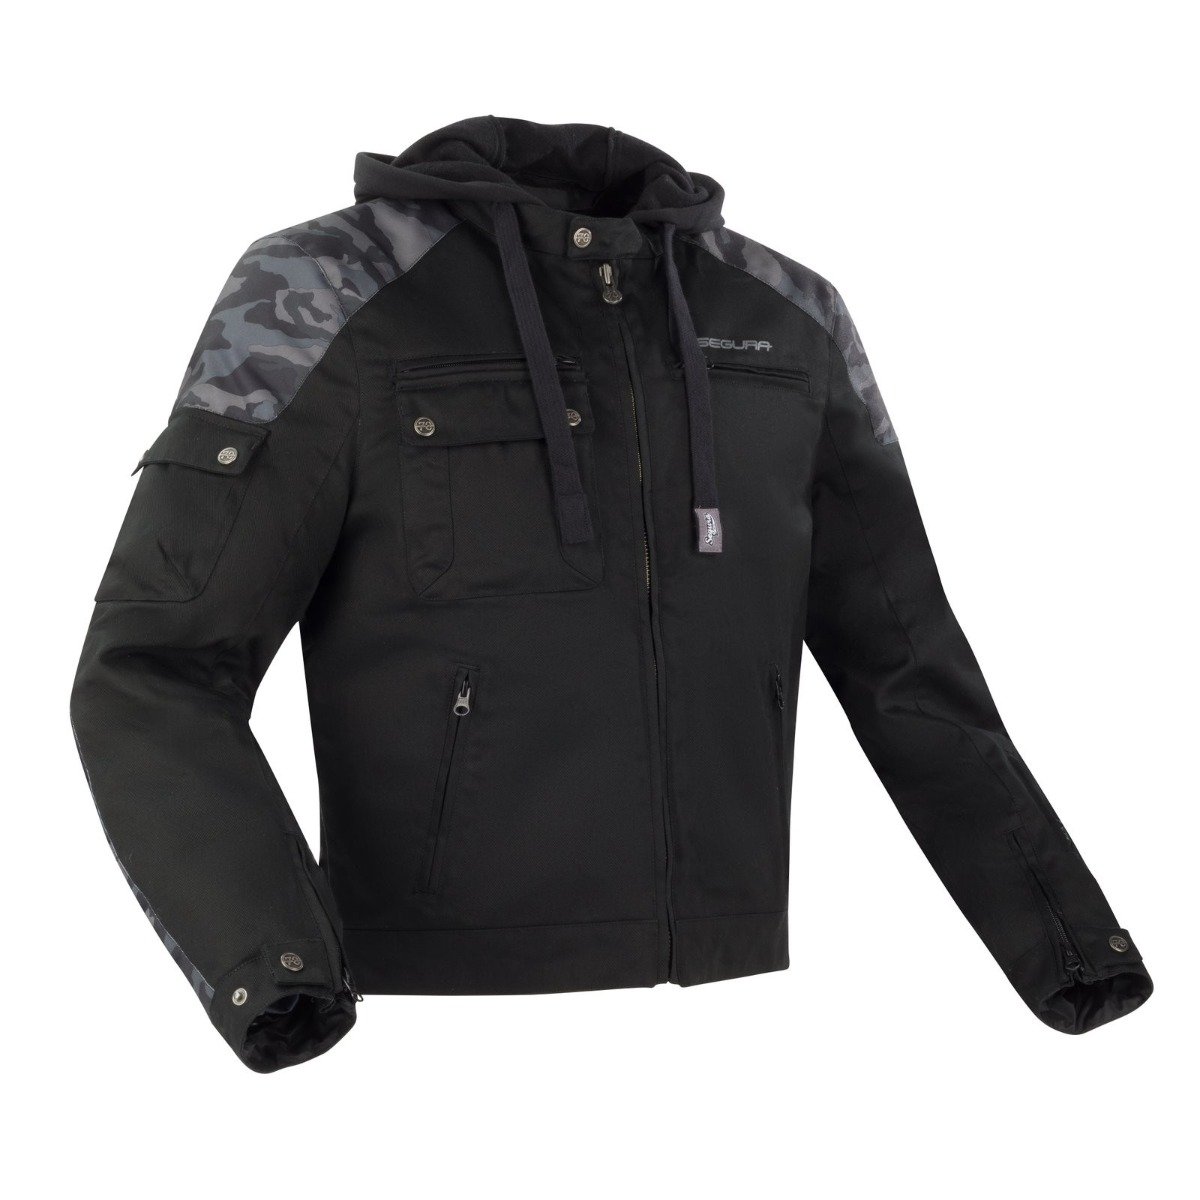 Image of Segura Chikko Jacket Black Size XL ID 3660815154014